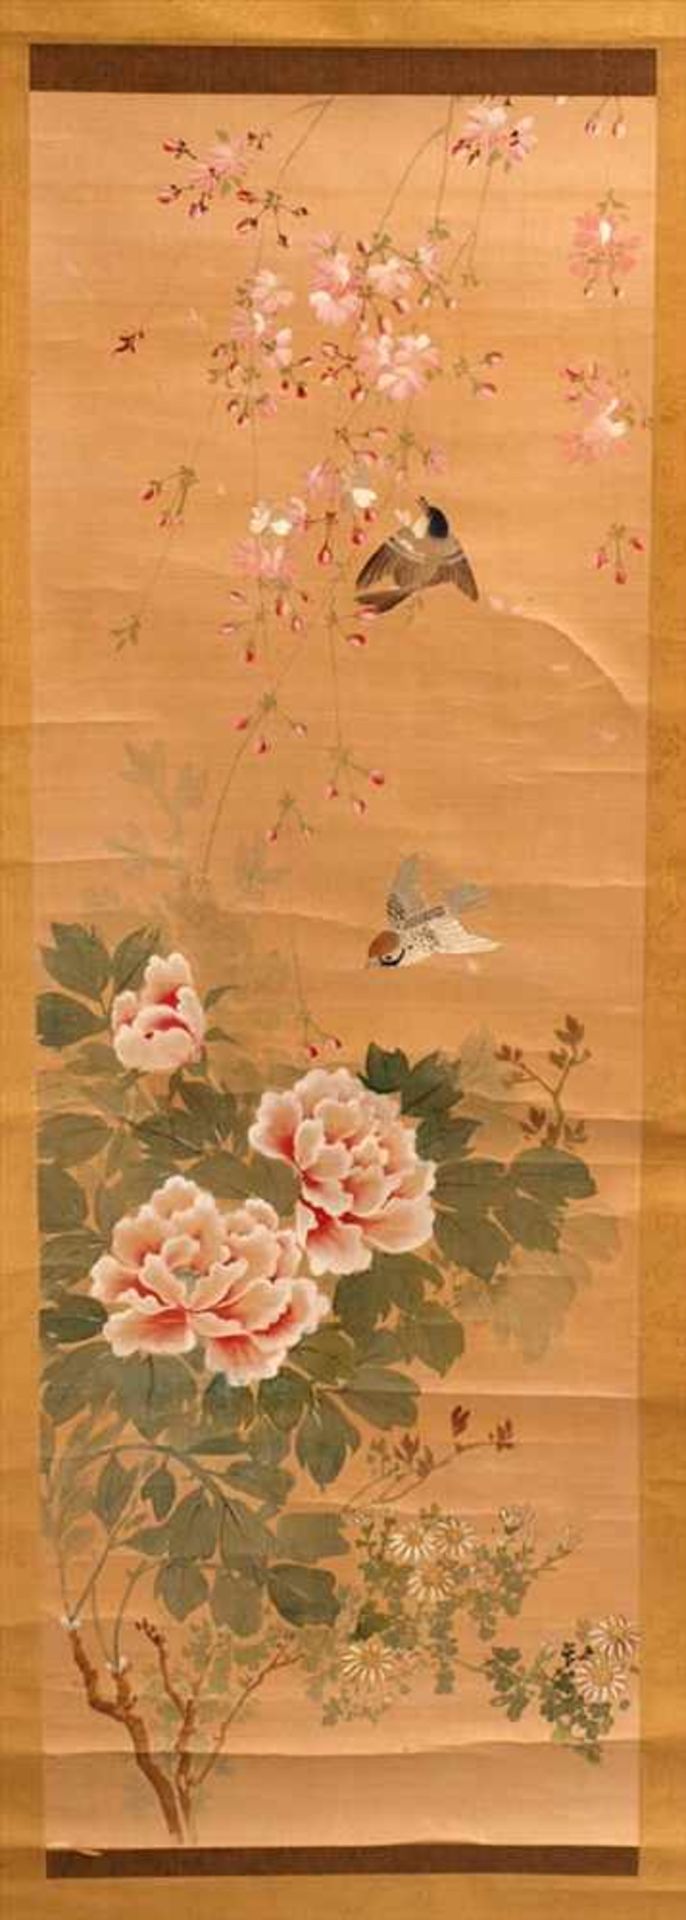 Farbholzschnitt, Japan, wohl 19.Jhdt.Blütenzweige mit teilweise überstickten Vögeln und Blüten. - Image 2 of 3